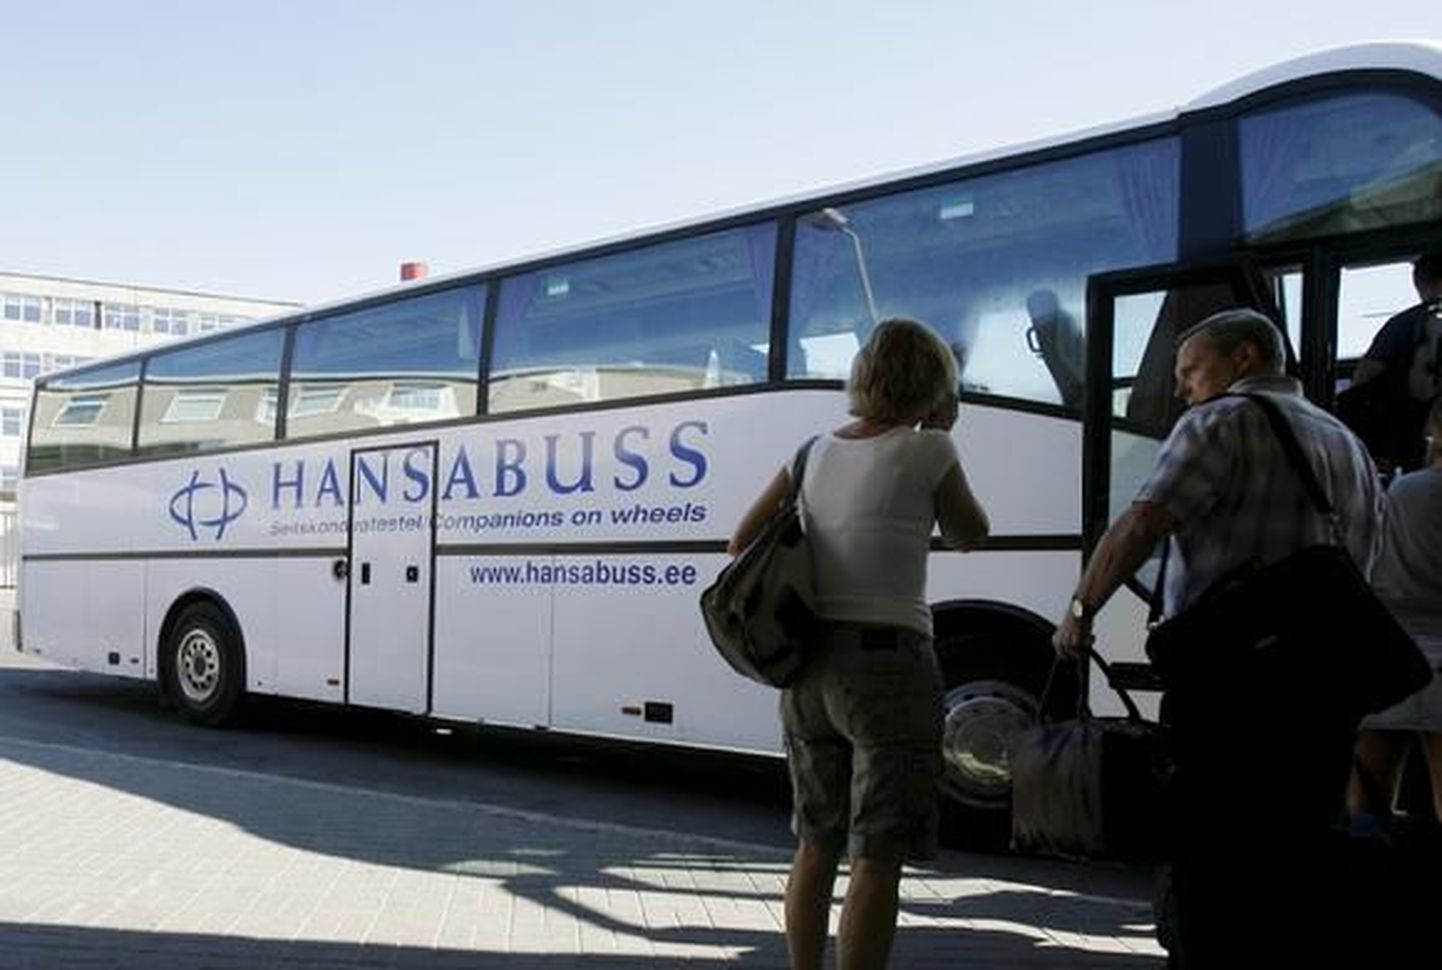 Hansabuss müüb sooduspileteid kõigile üliõpilastele.